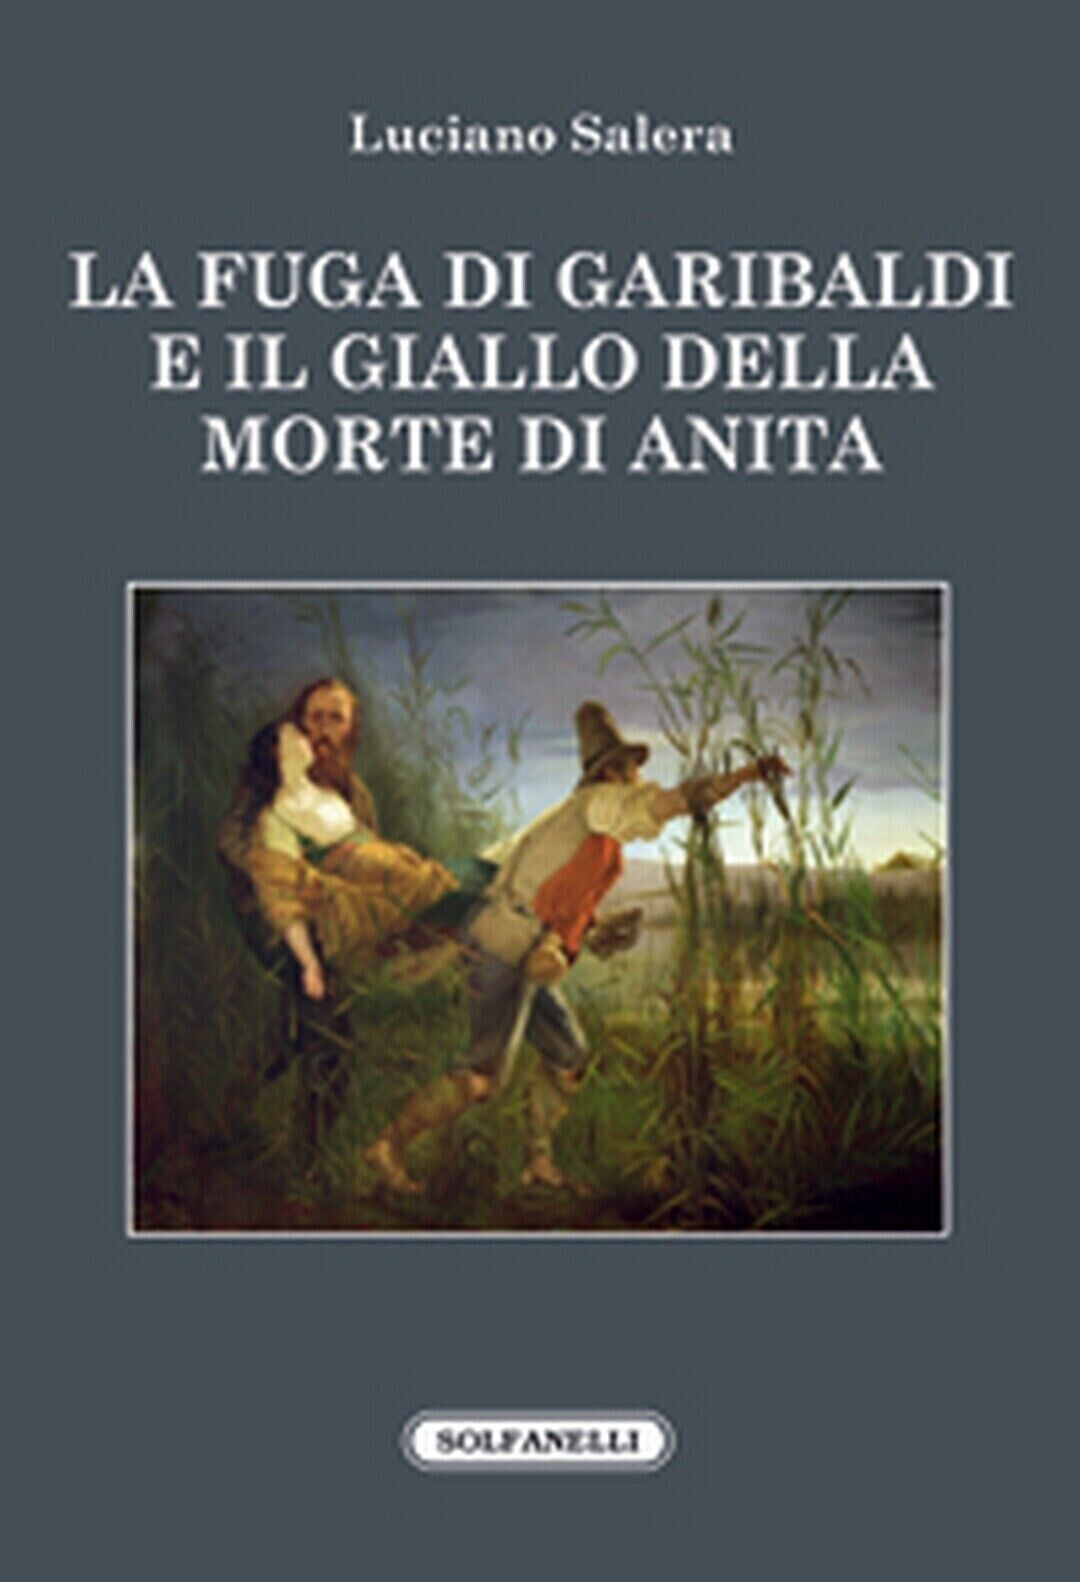 La fuga di Garibaldi e il giallo della morte di Anita di Luciano Salera, 2016,